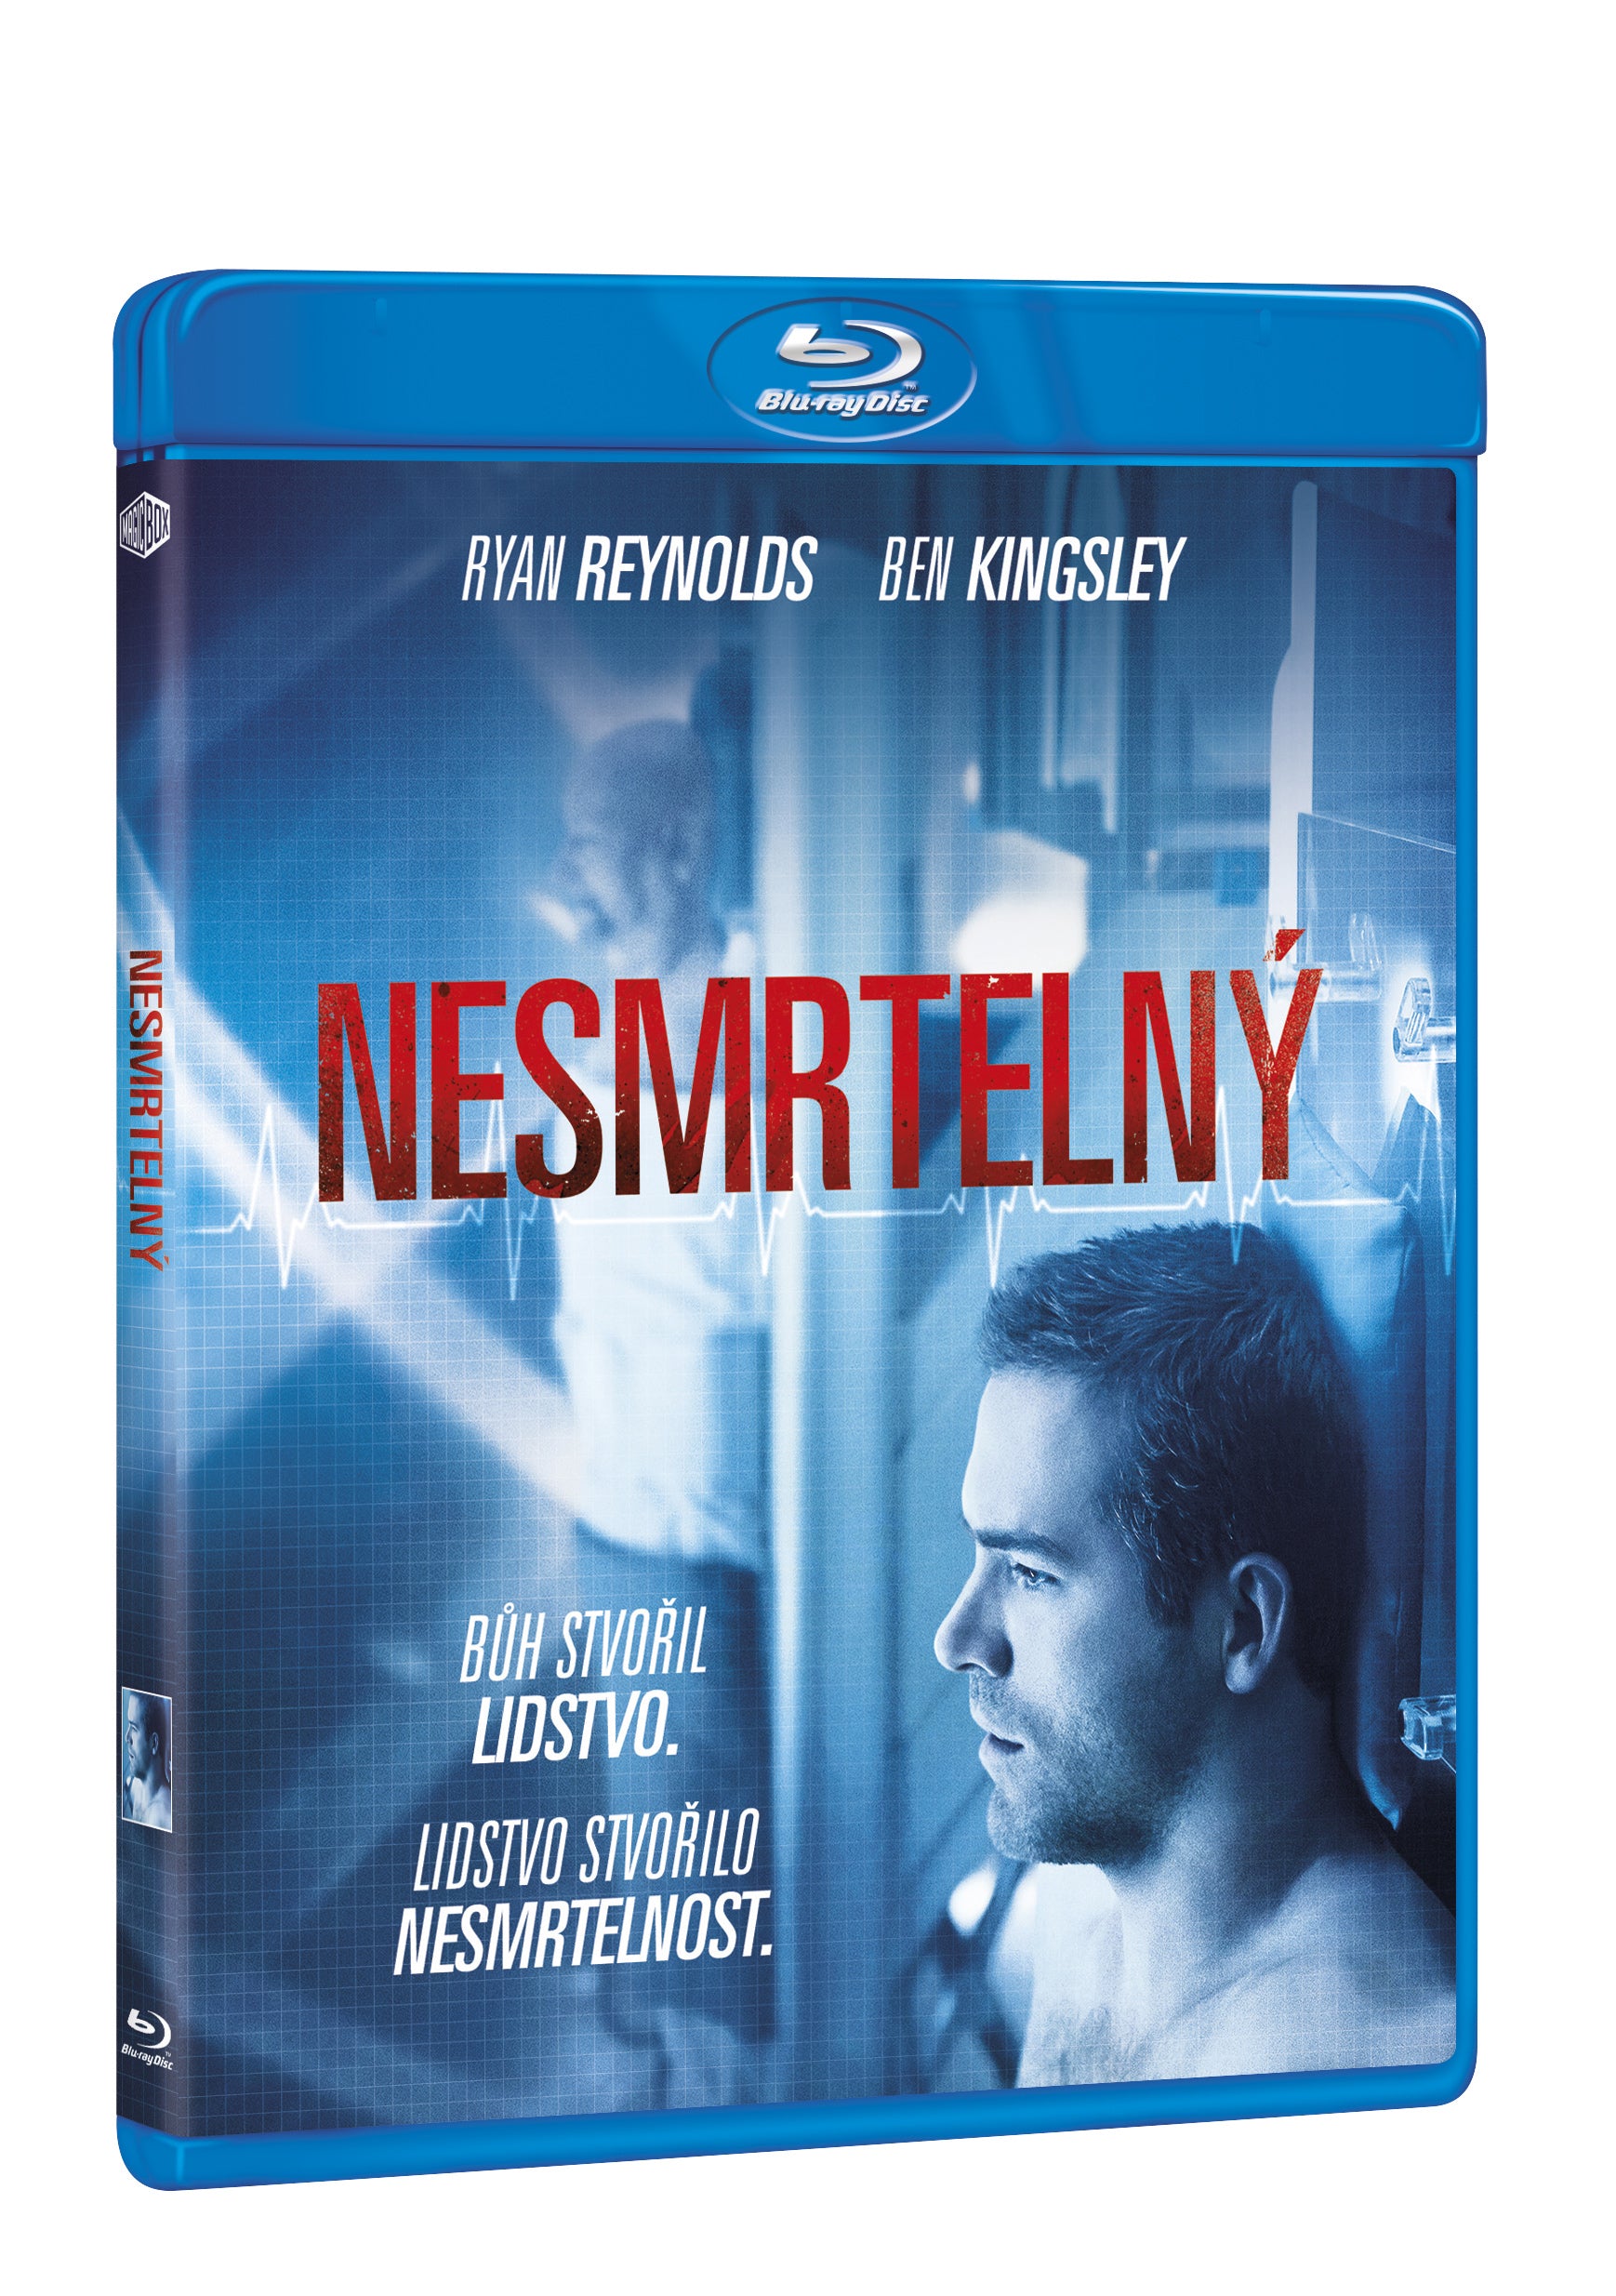 Nesmrtelny BD / Self/less - Czech version